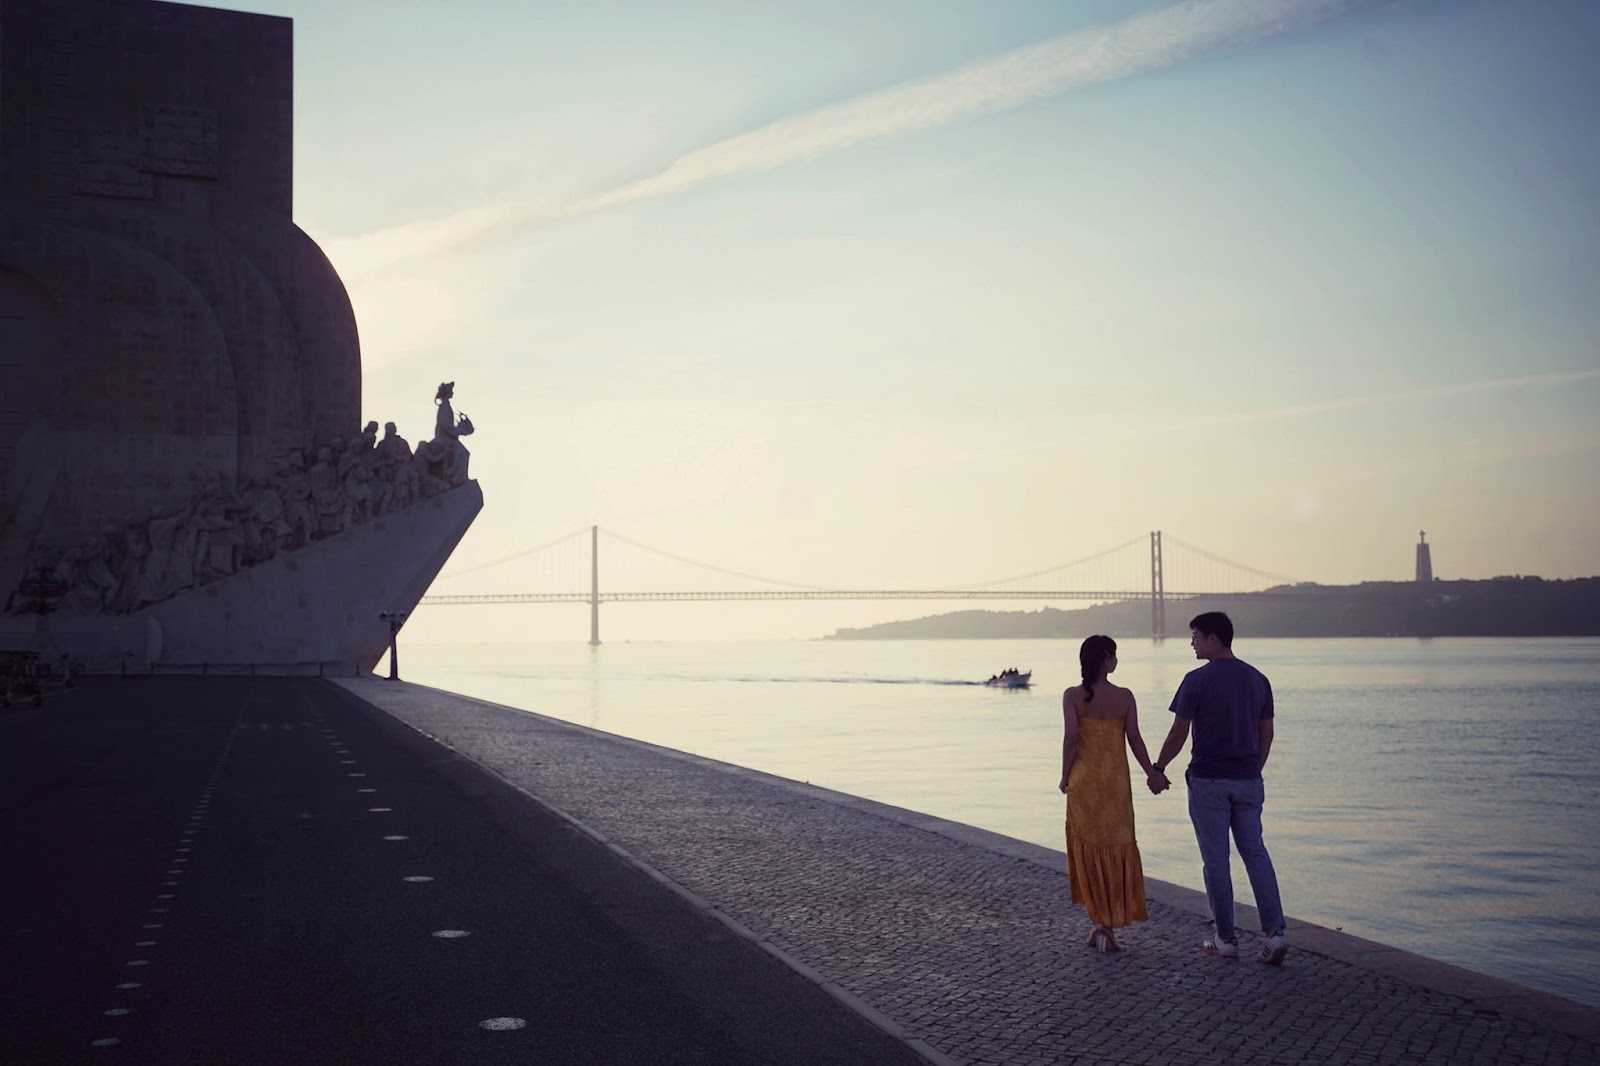 Khám phá Lisbon xinh đẹp bên dòng sông Tagus qua lăng kính du khách Việt - 9